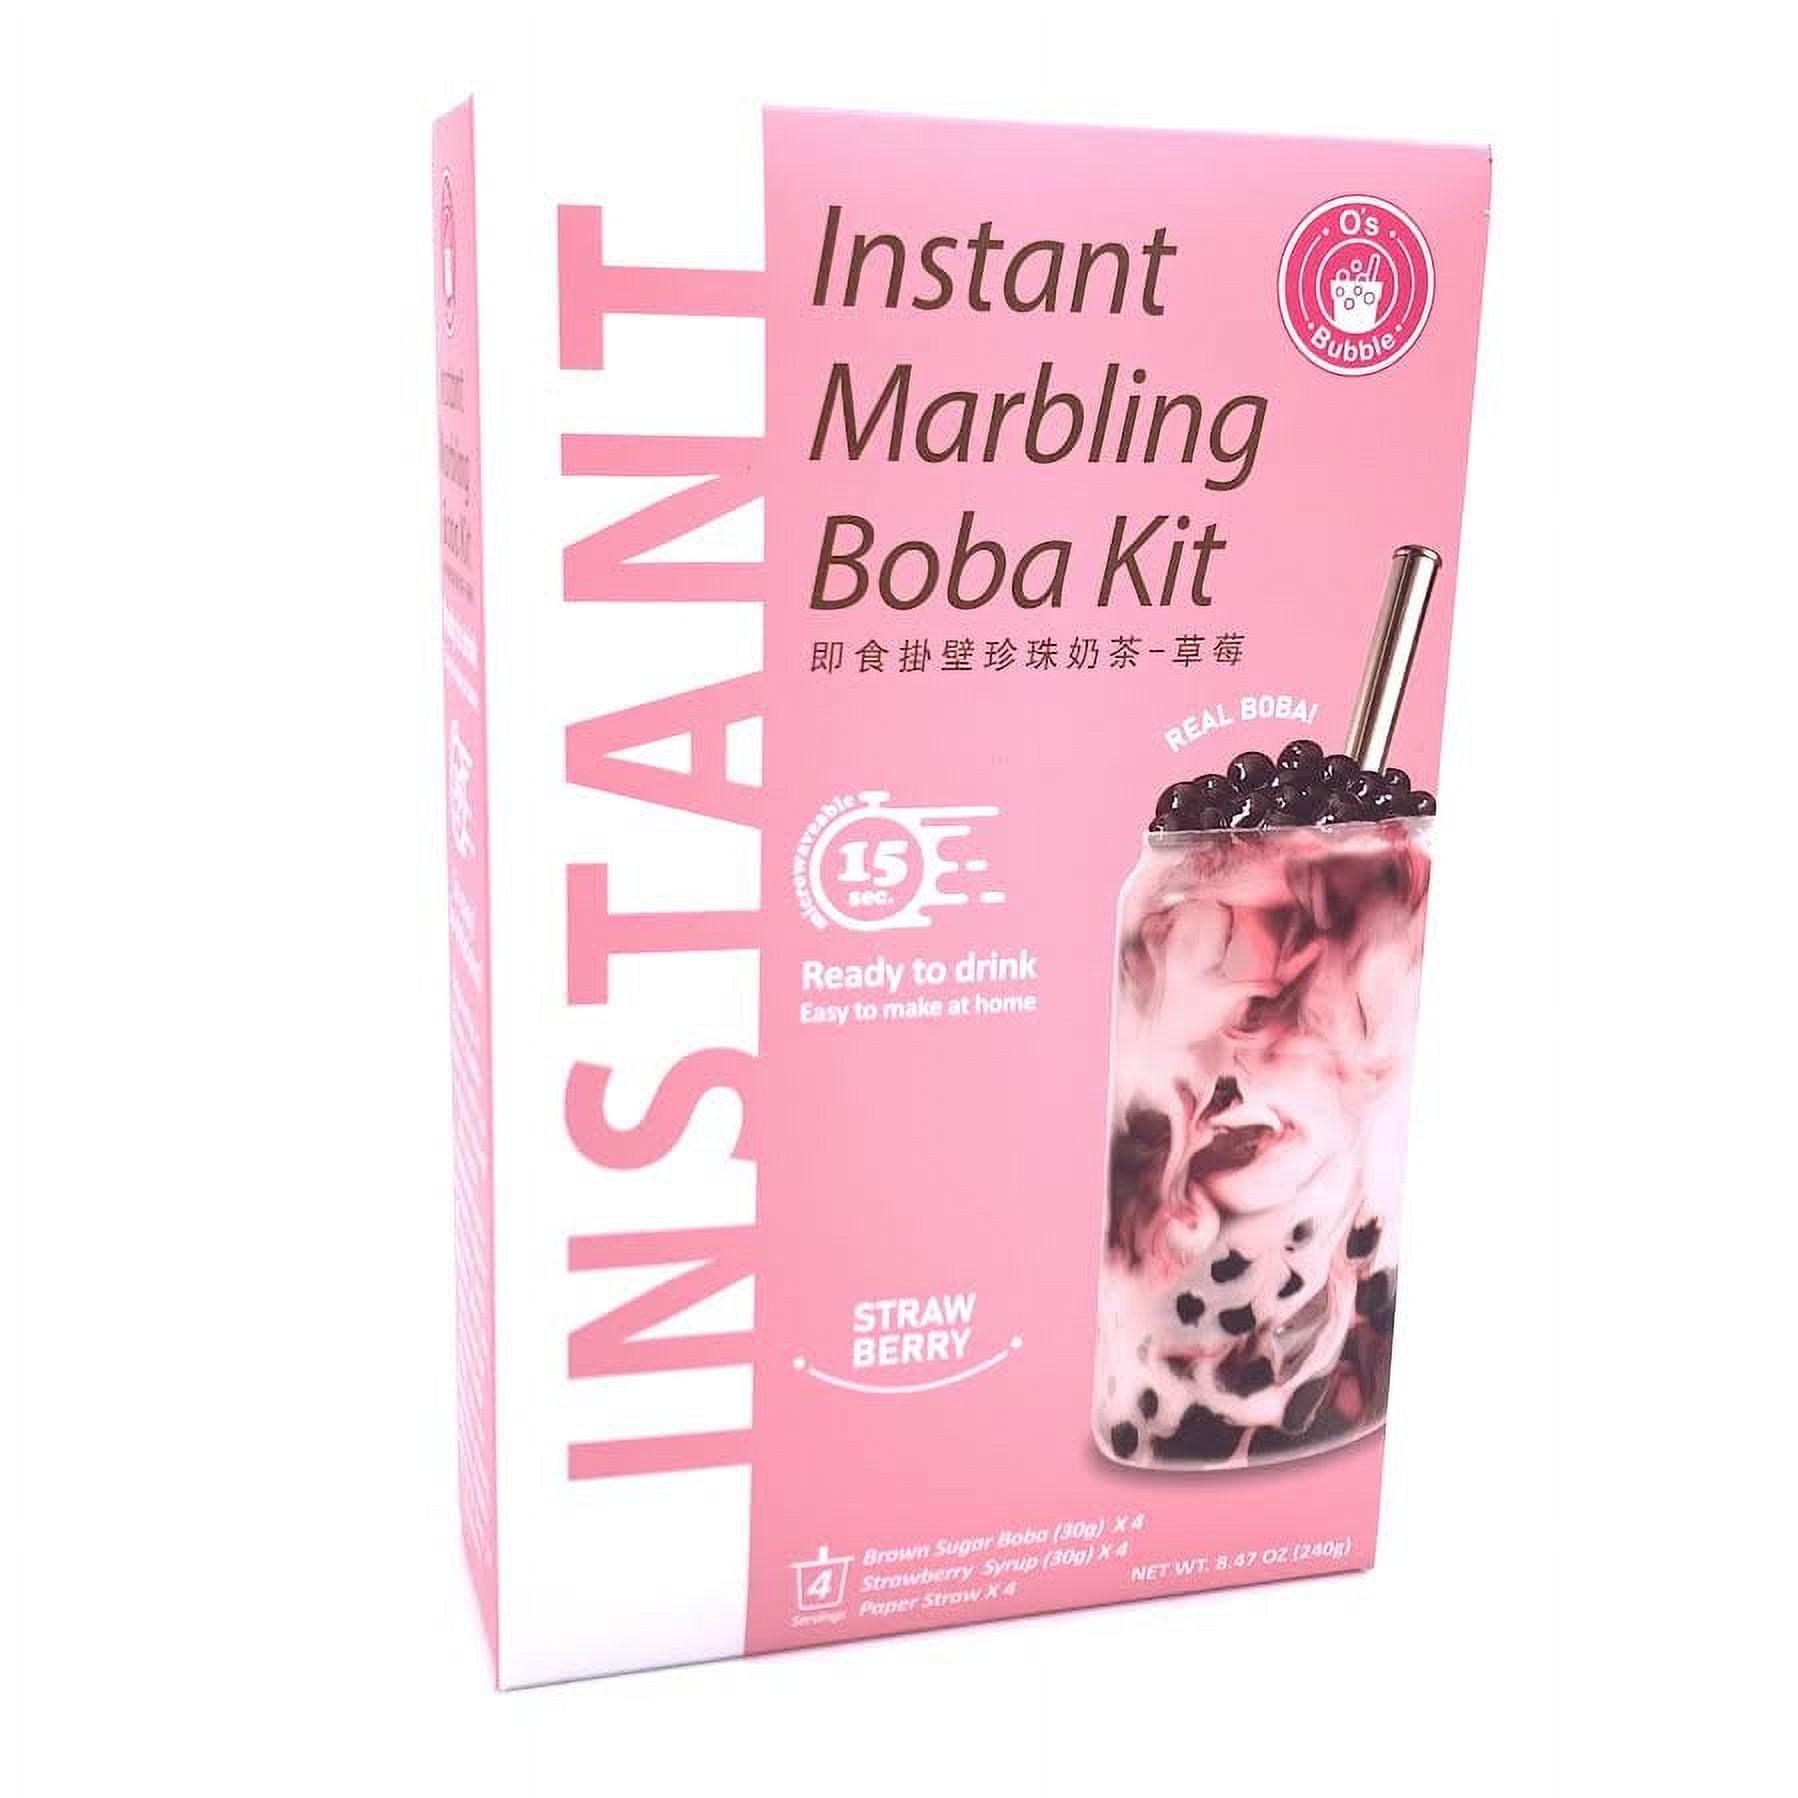 Marbling Boba Kit Gör egen bubble Brunt Socker tea 4-pack